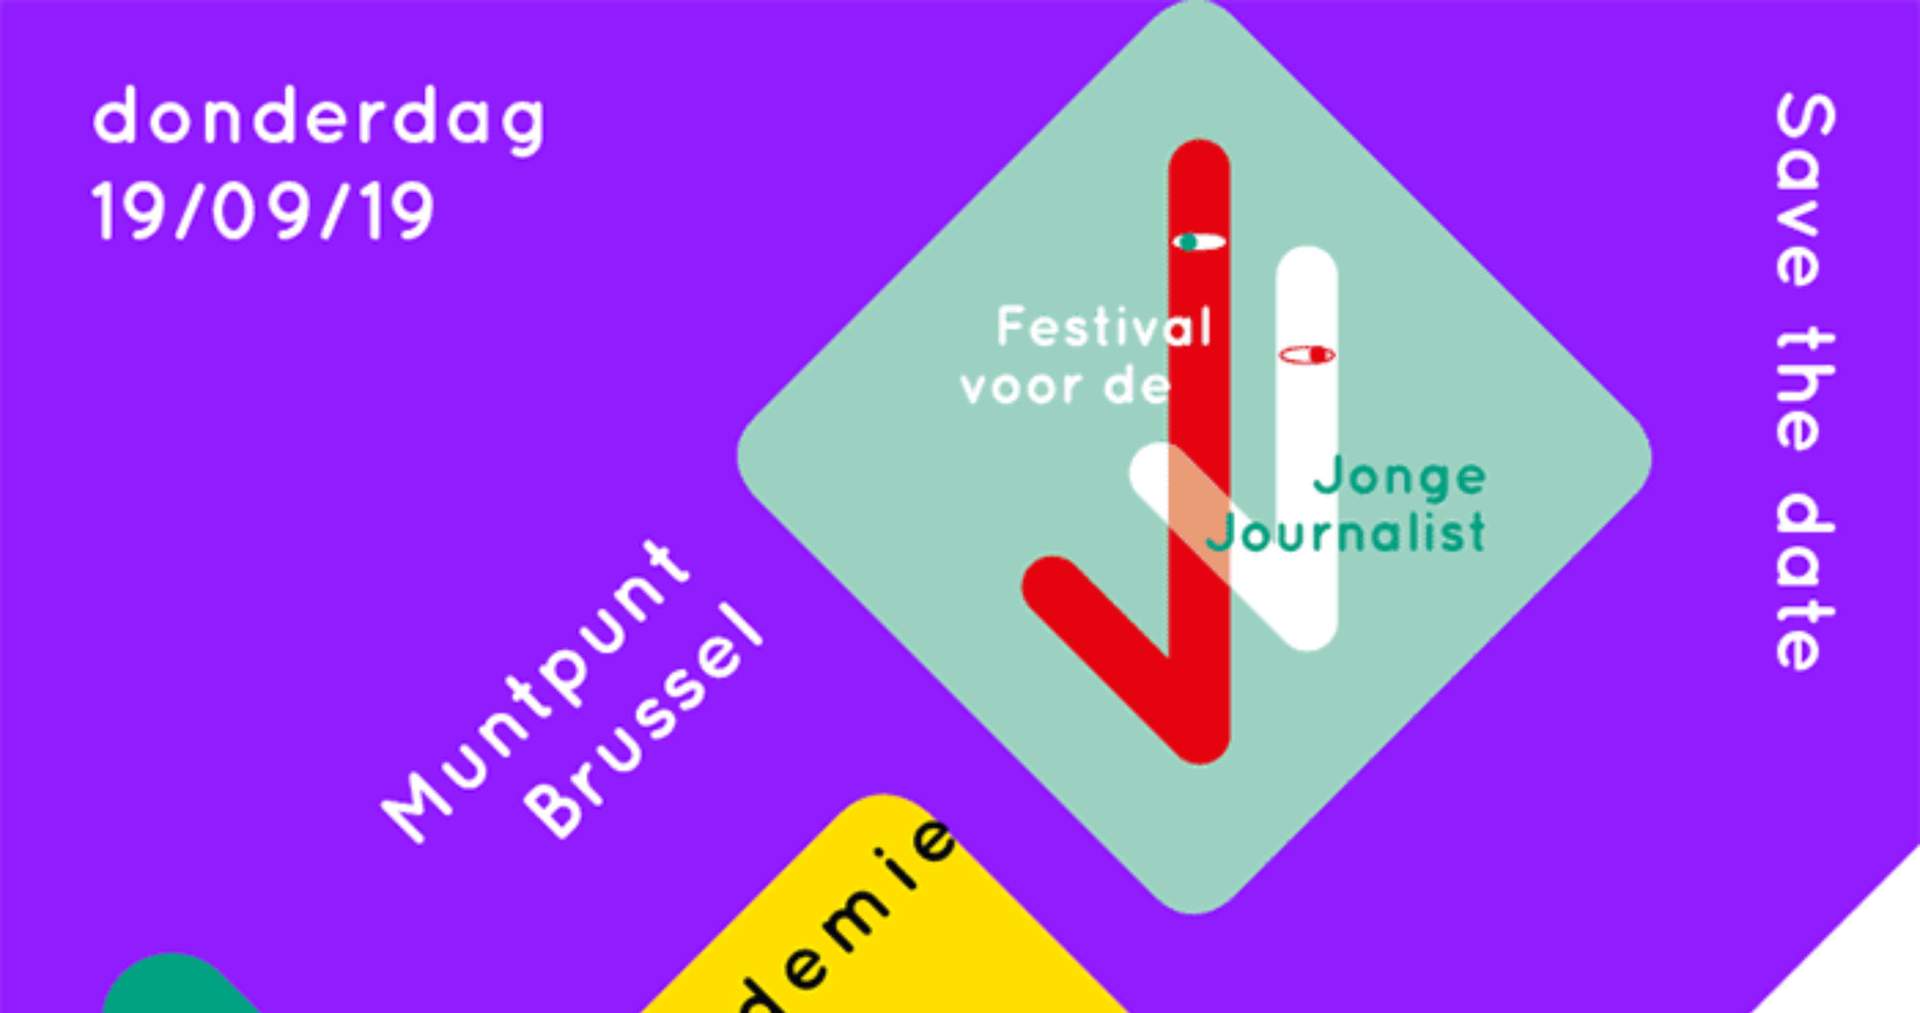 Festival voor de Jonge Journalist